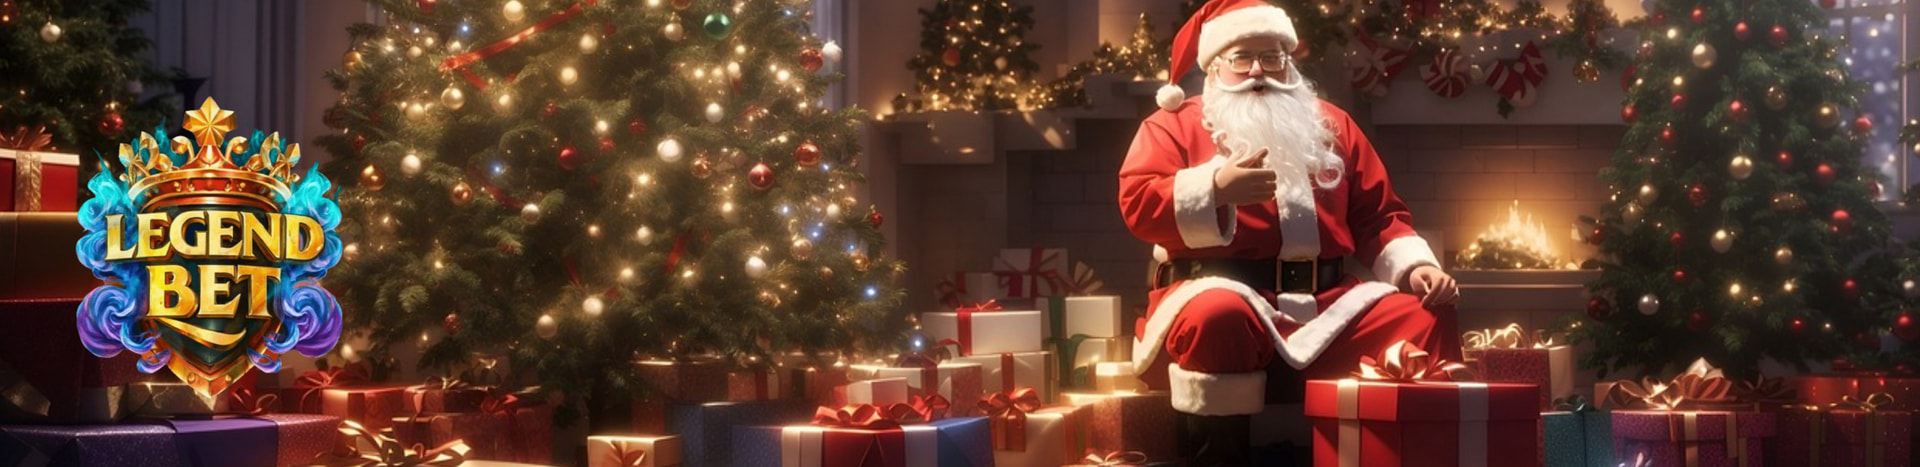 christmas-gifts-and-bonuses_banner